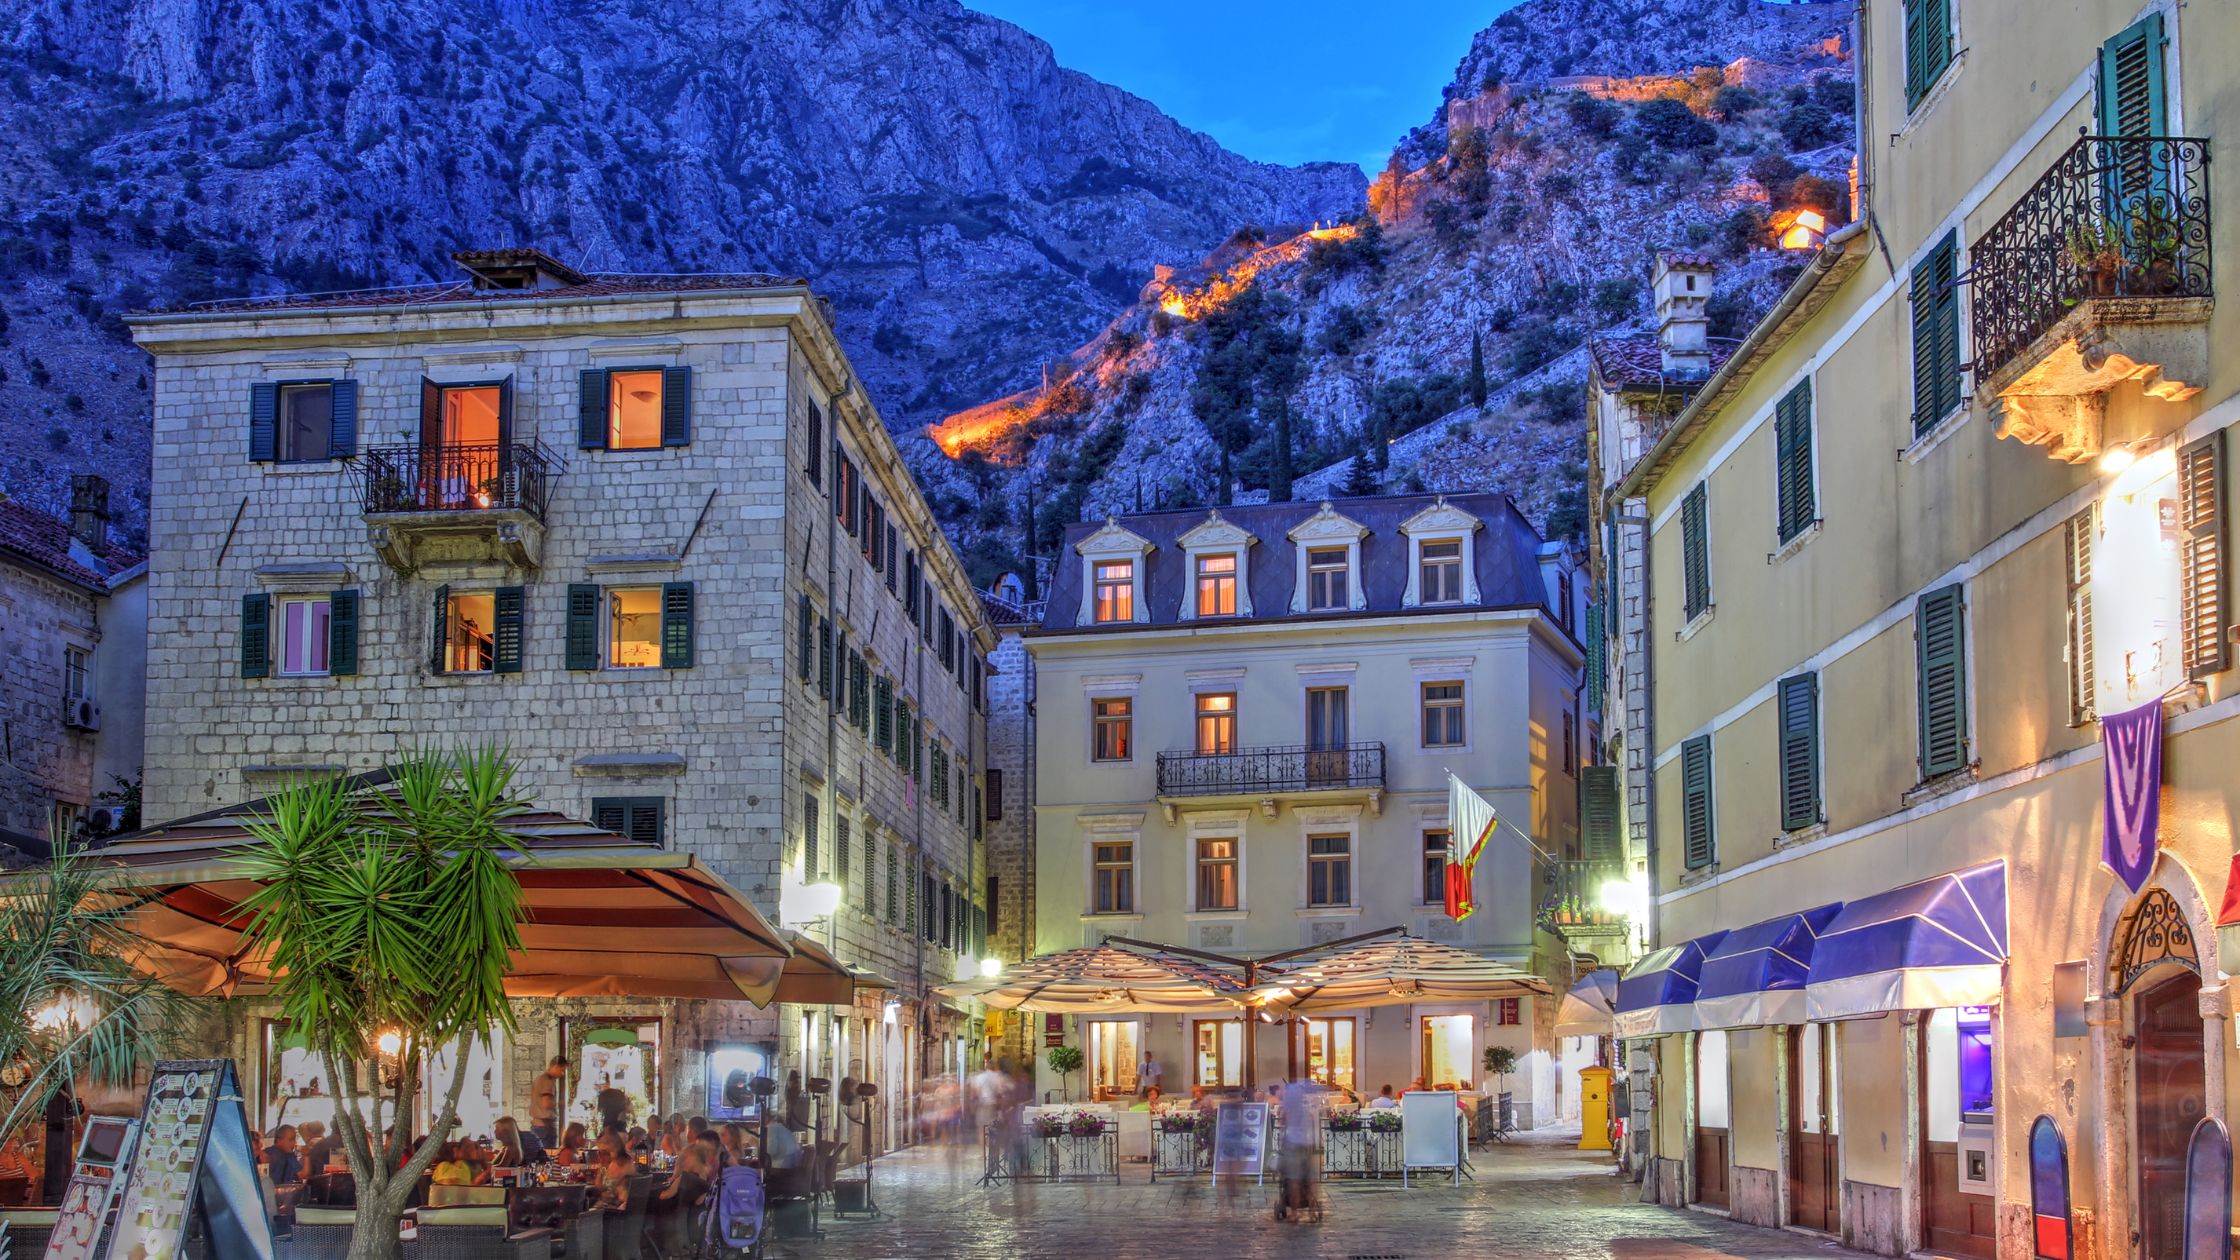 Ciudad de Kotor, Montenegro